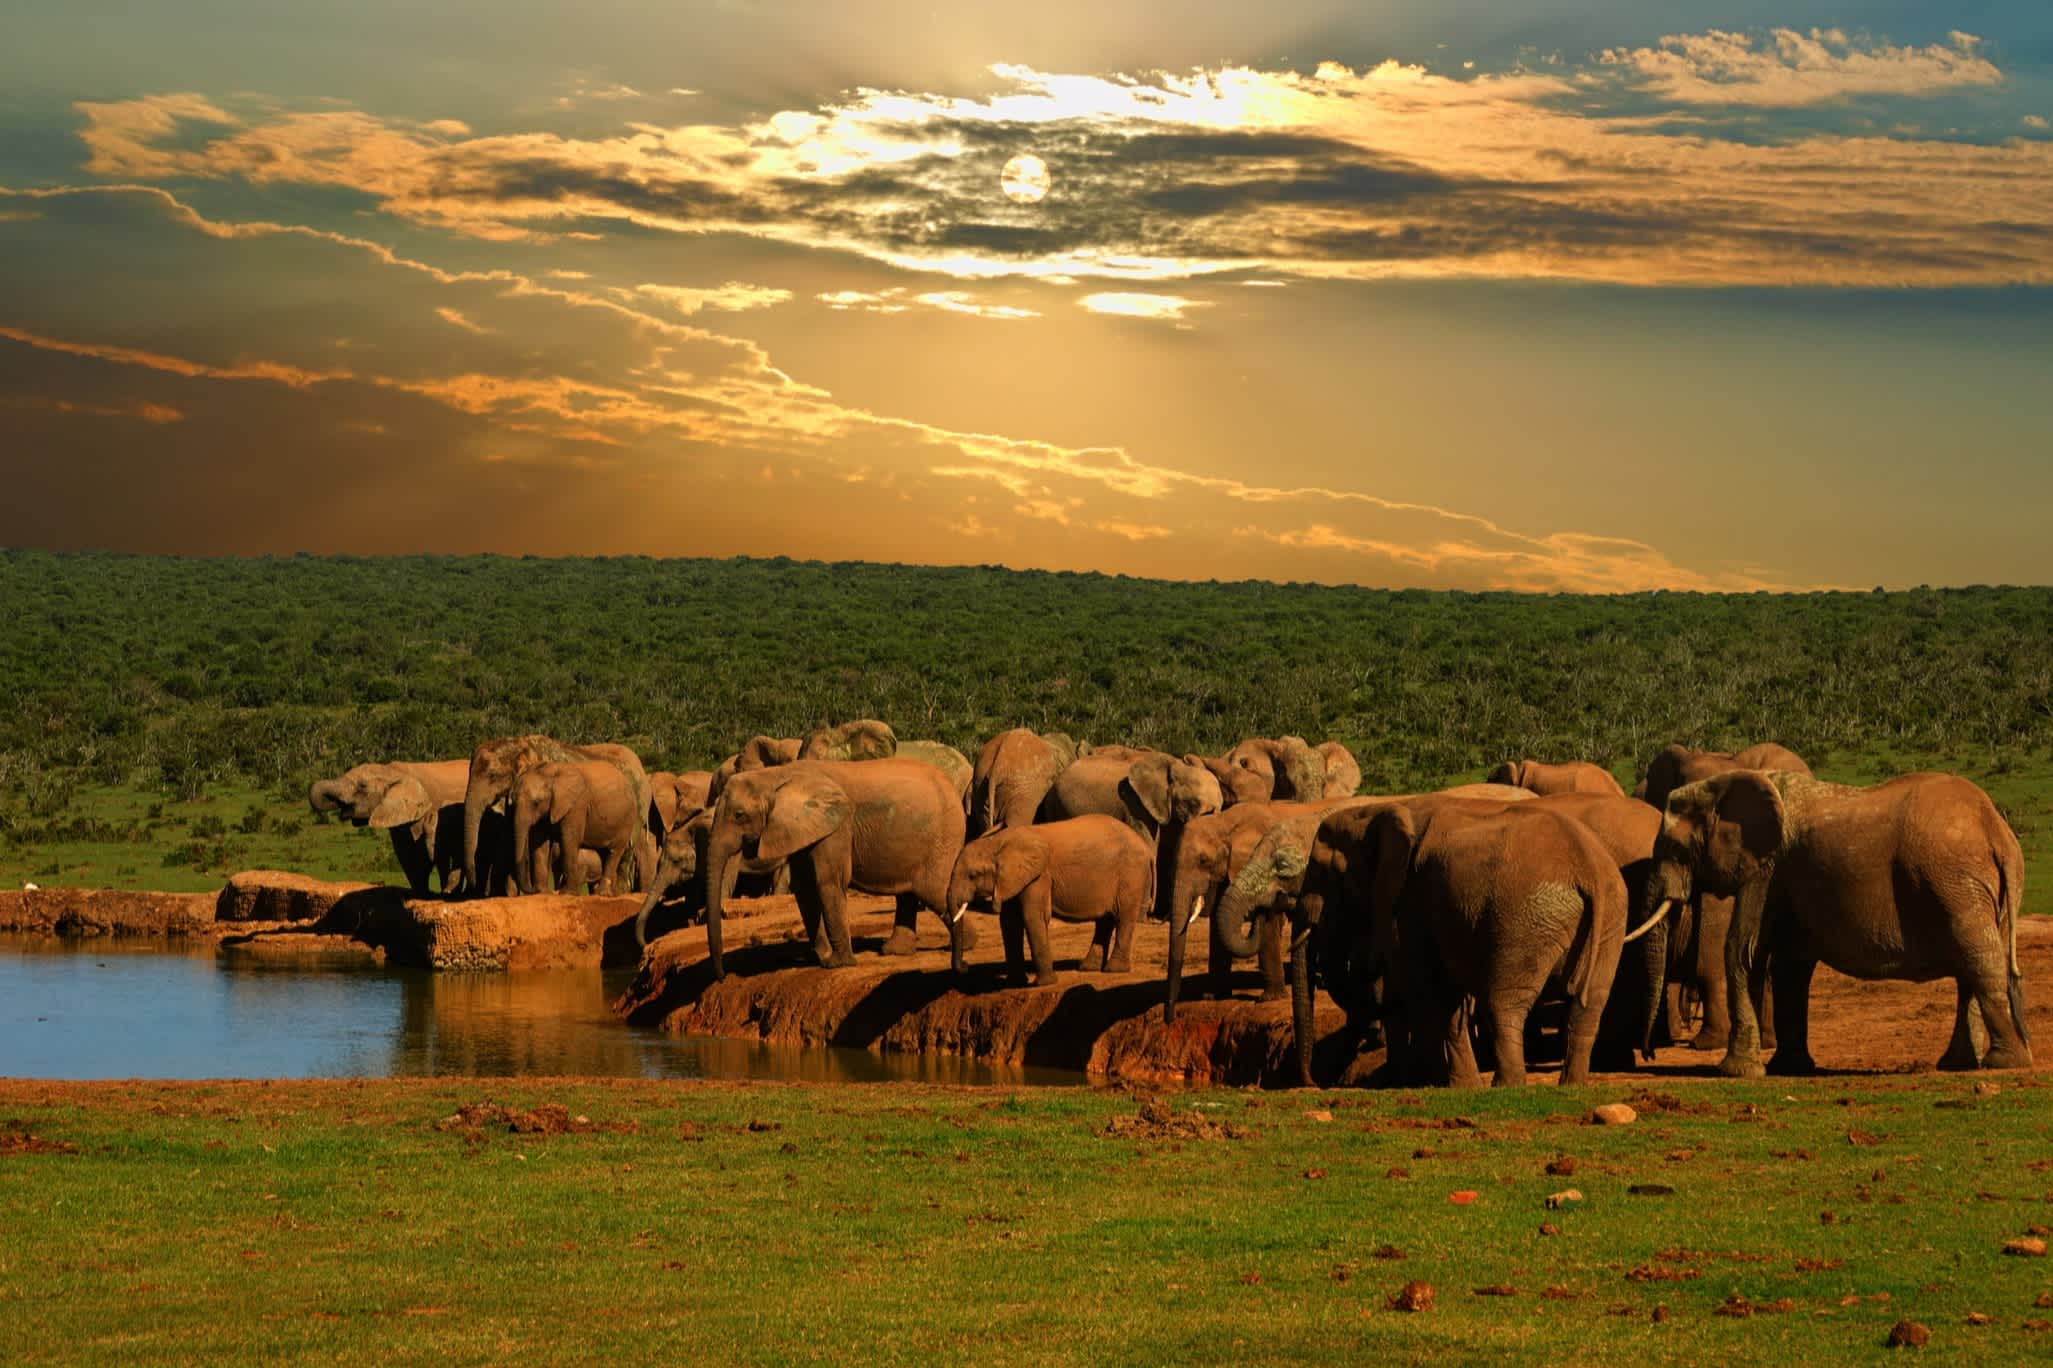 Elefantenherde am Wasserloch bei Sonnenuntergang